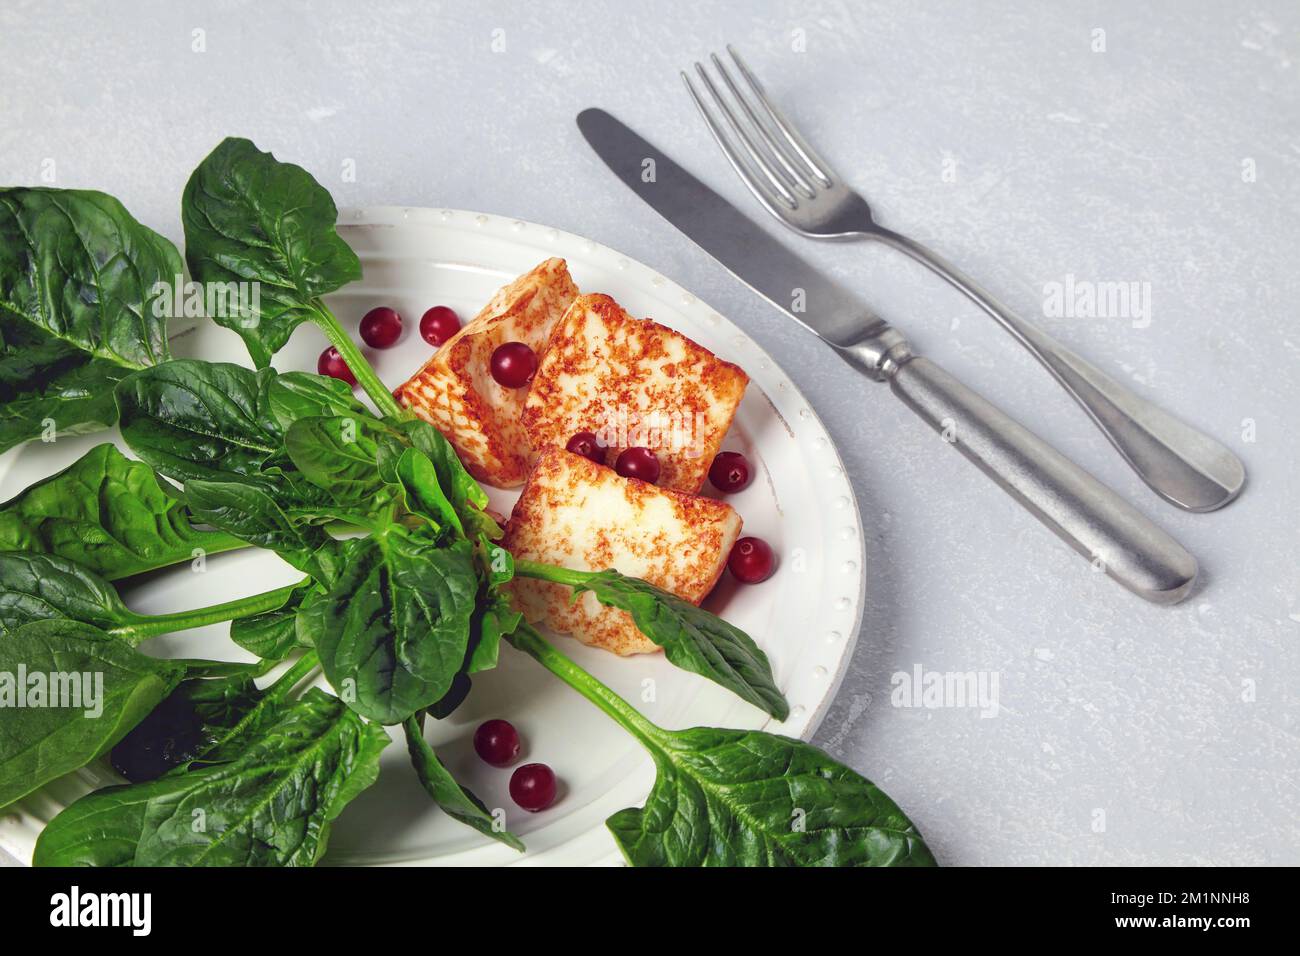 Mozzarella alloumi alla griglia con spinaci verdi e mirtilli rossi su un tavolo grigio in cemento Foto Stock